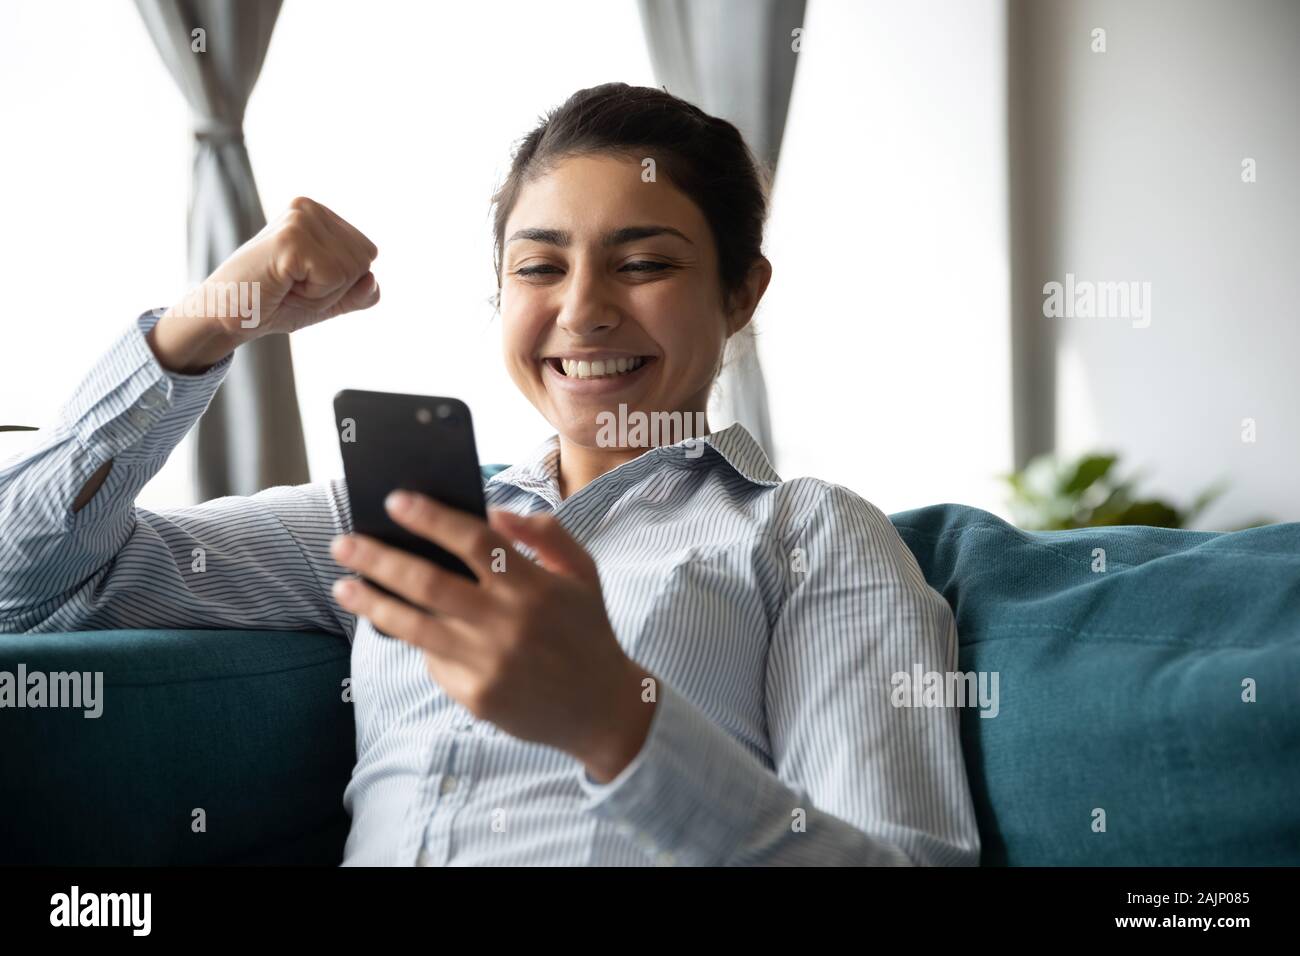 Emocionada alegría chica india teléfono espera celebrar app ganadora de la puja Foto de stock